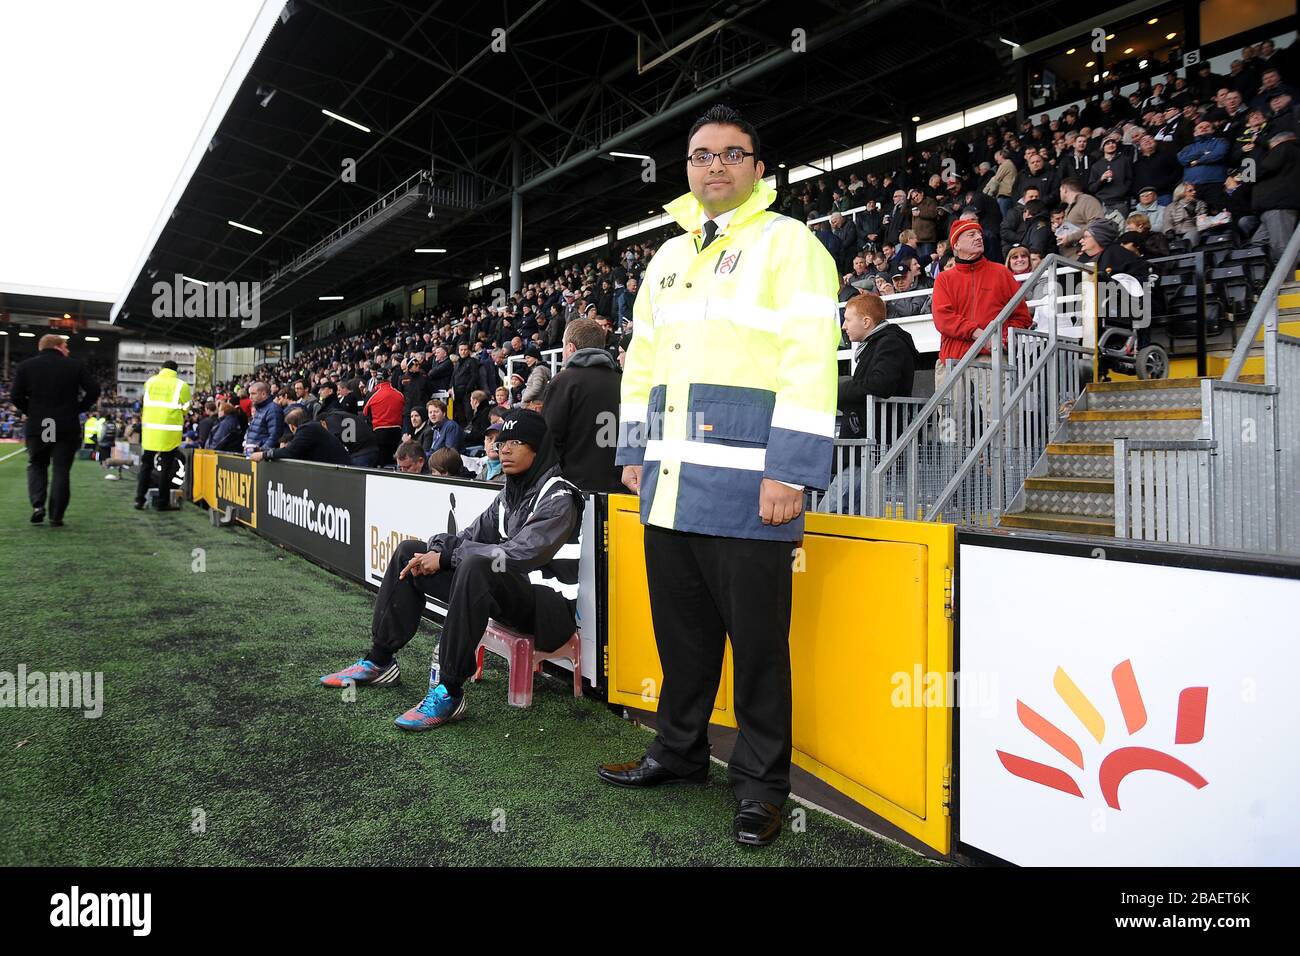 Las azafatas de Fulham ayudan a los aficionados alrededor del estadio el día del partido Foto de stock